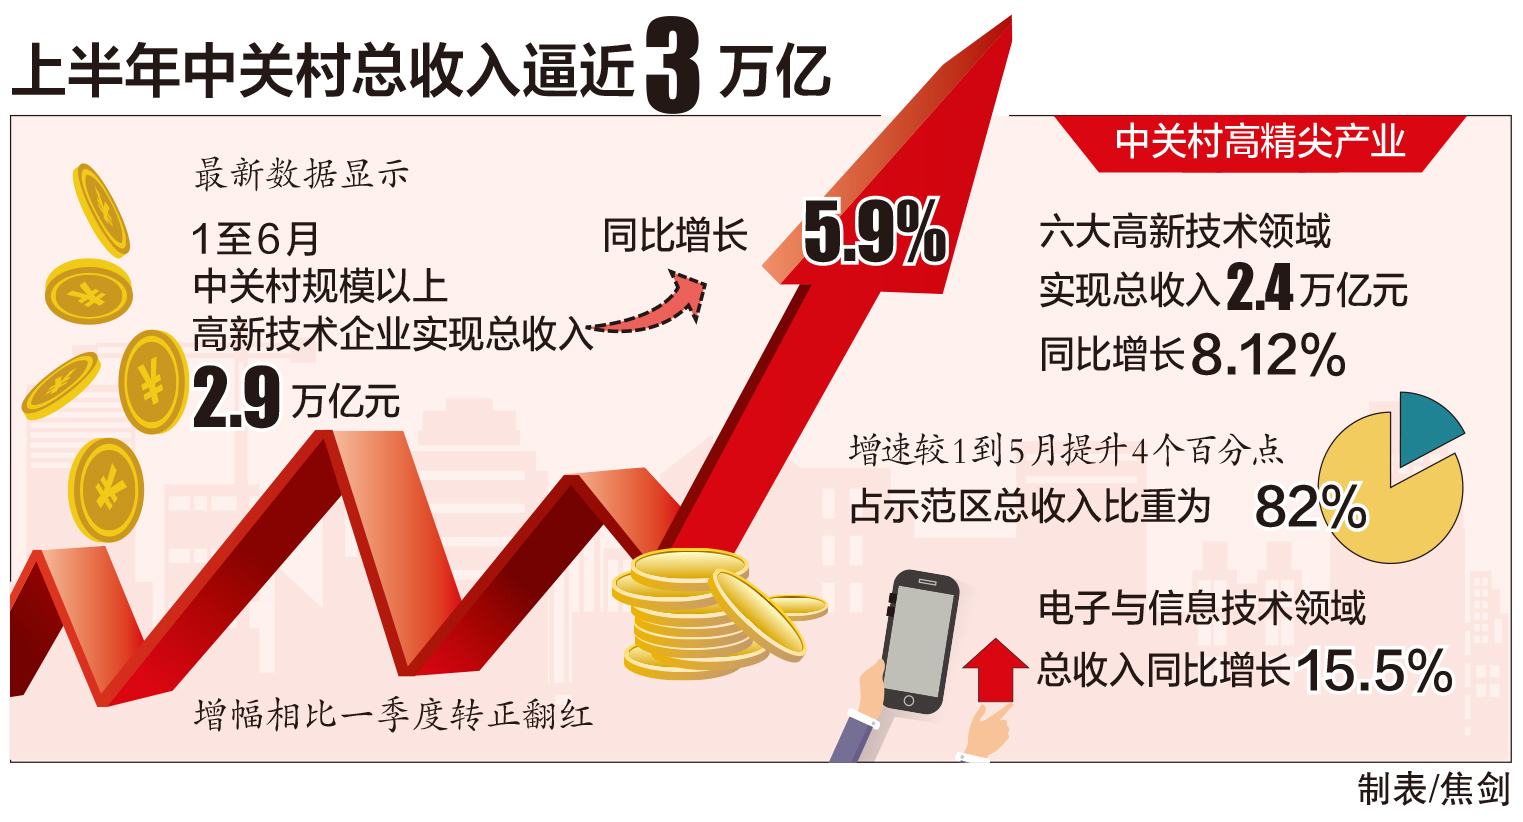 上半年中关村总收入逼近3万亿 同比增长5.9% 创新活力支撑北京经济回稳